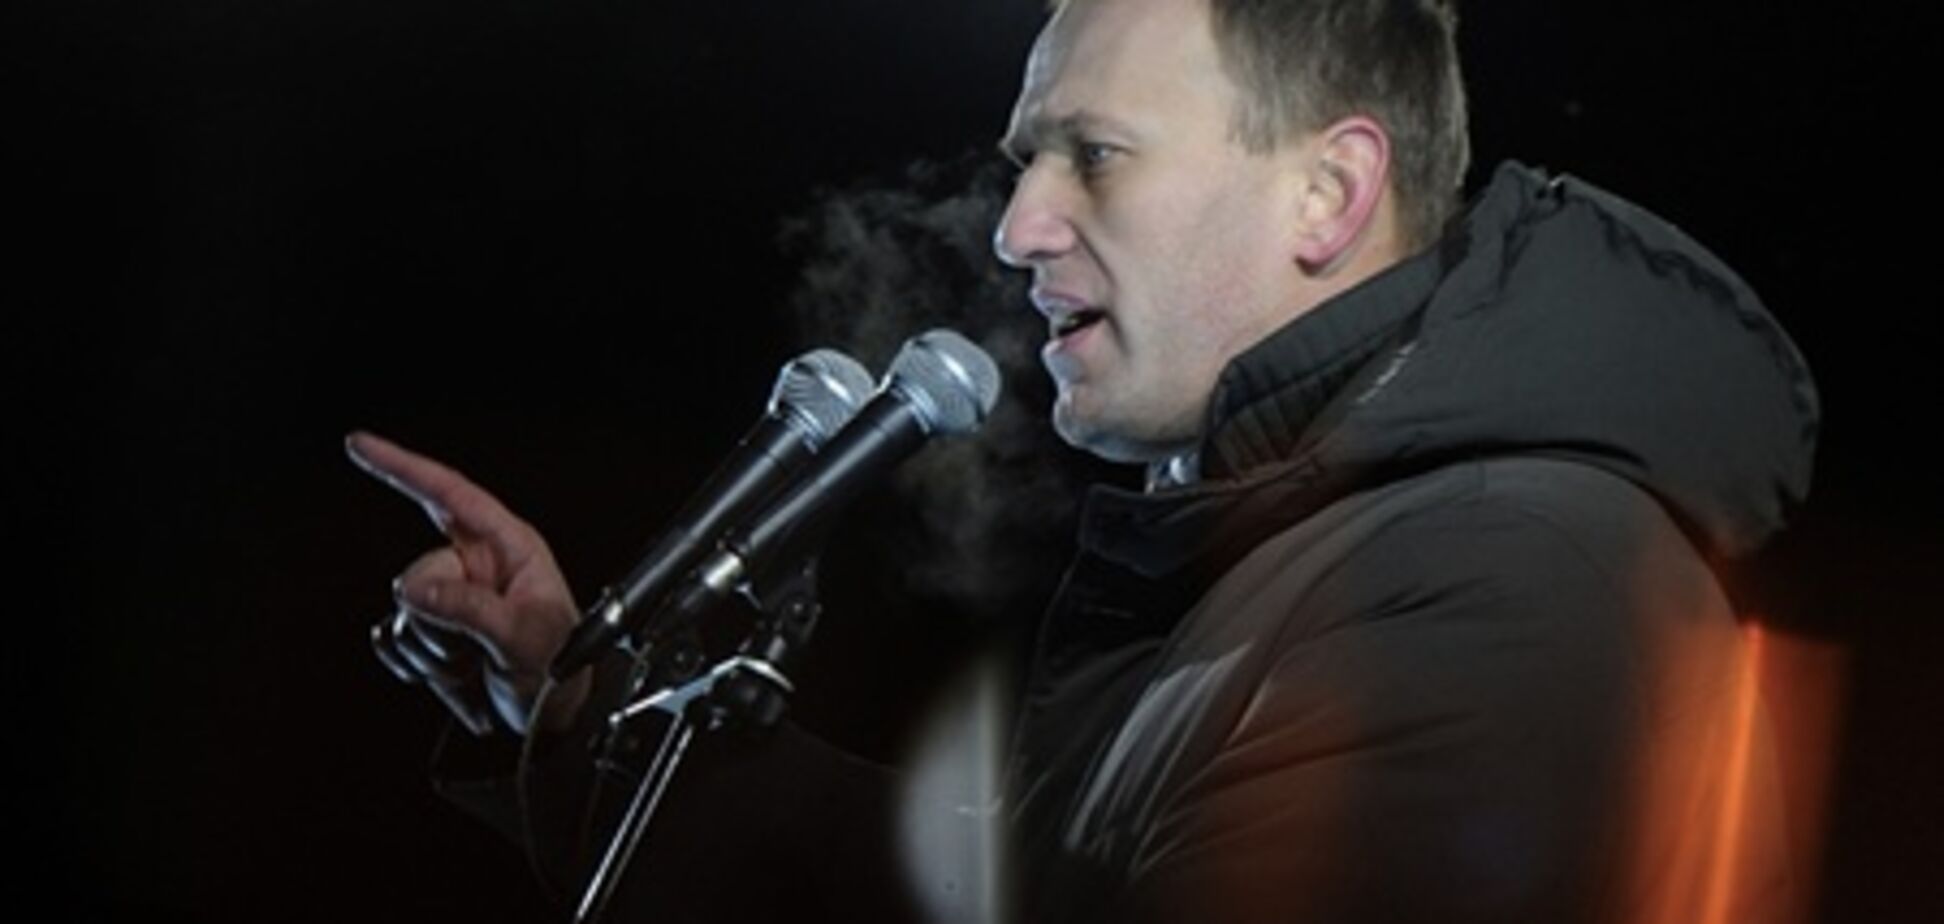 Депутата от 'Единой России' обыскали по делу Навального